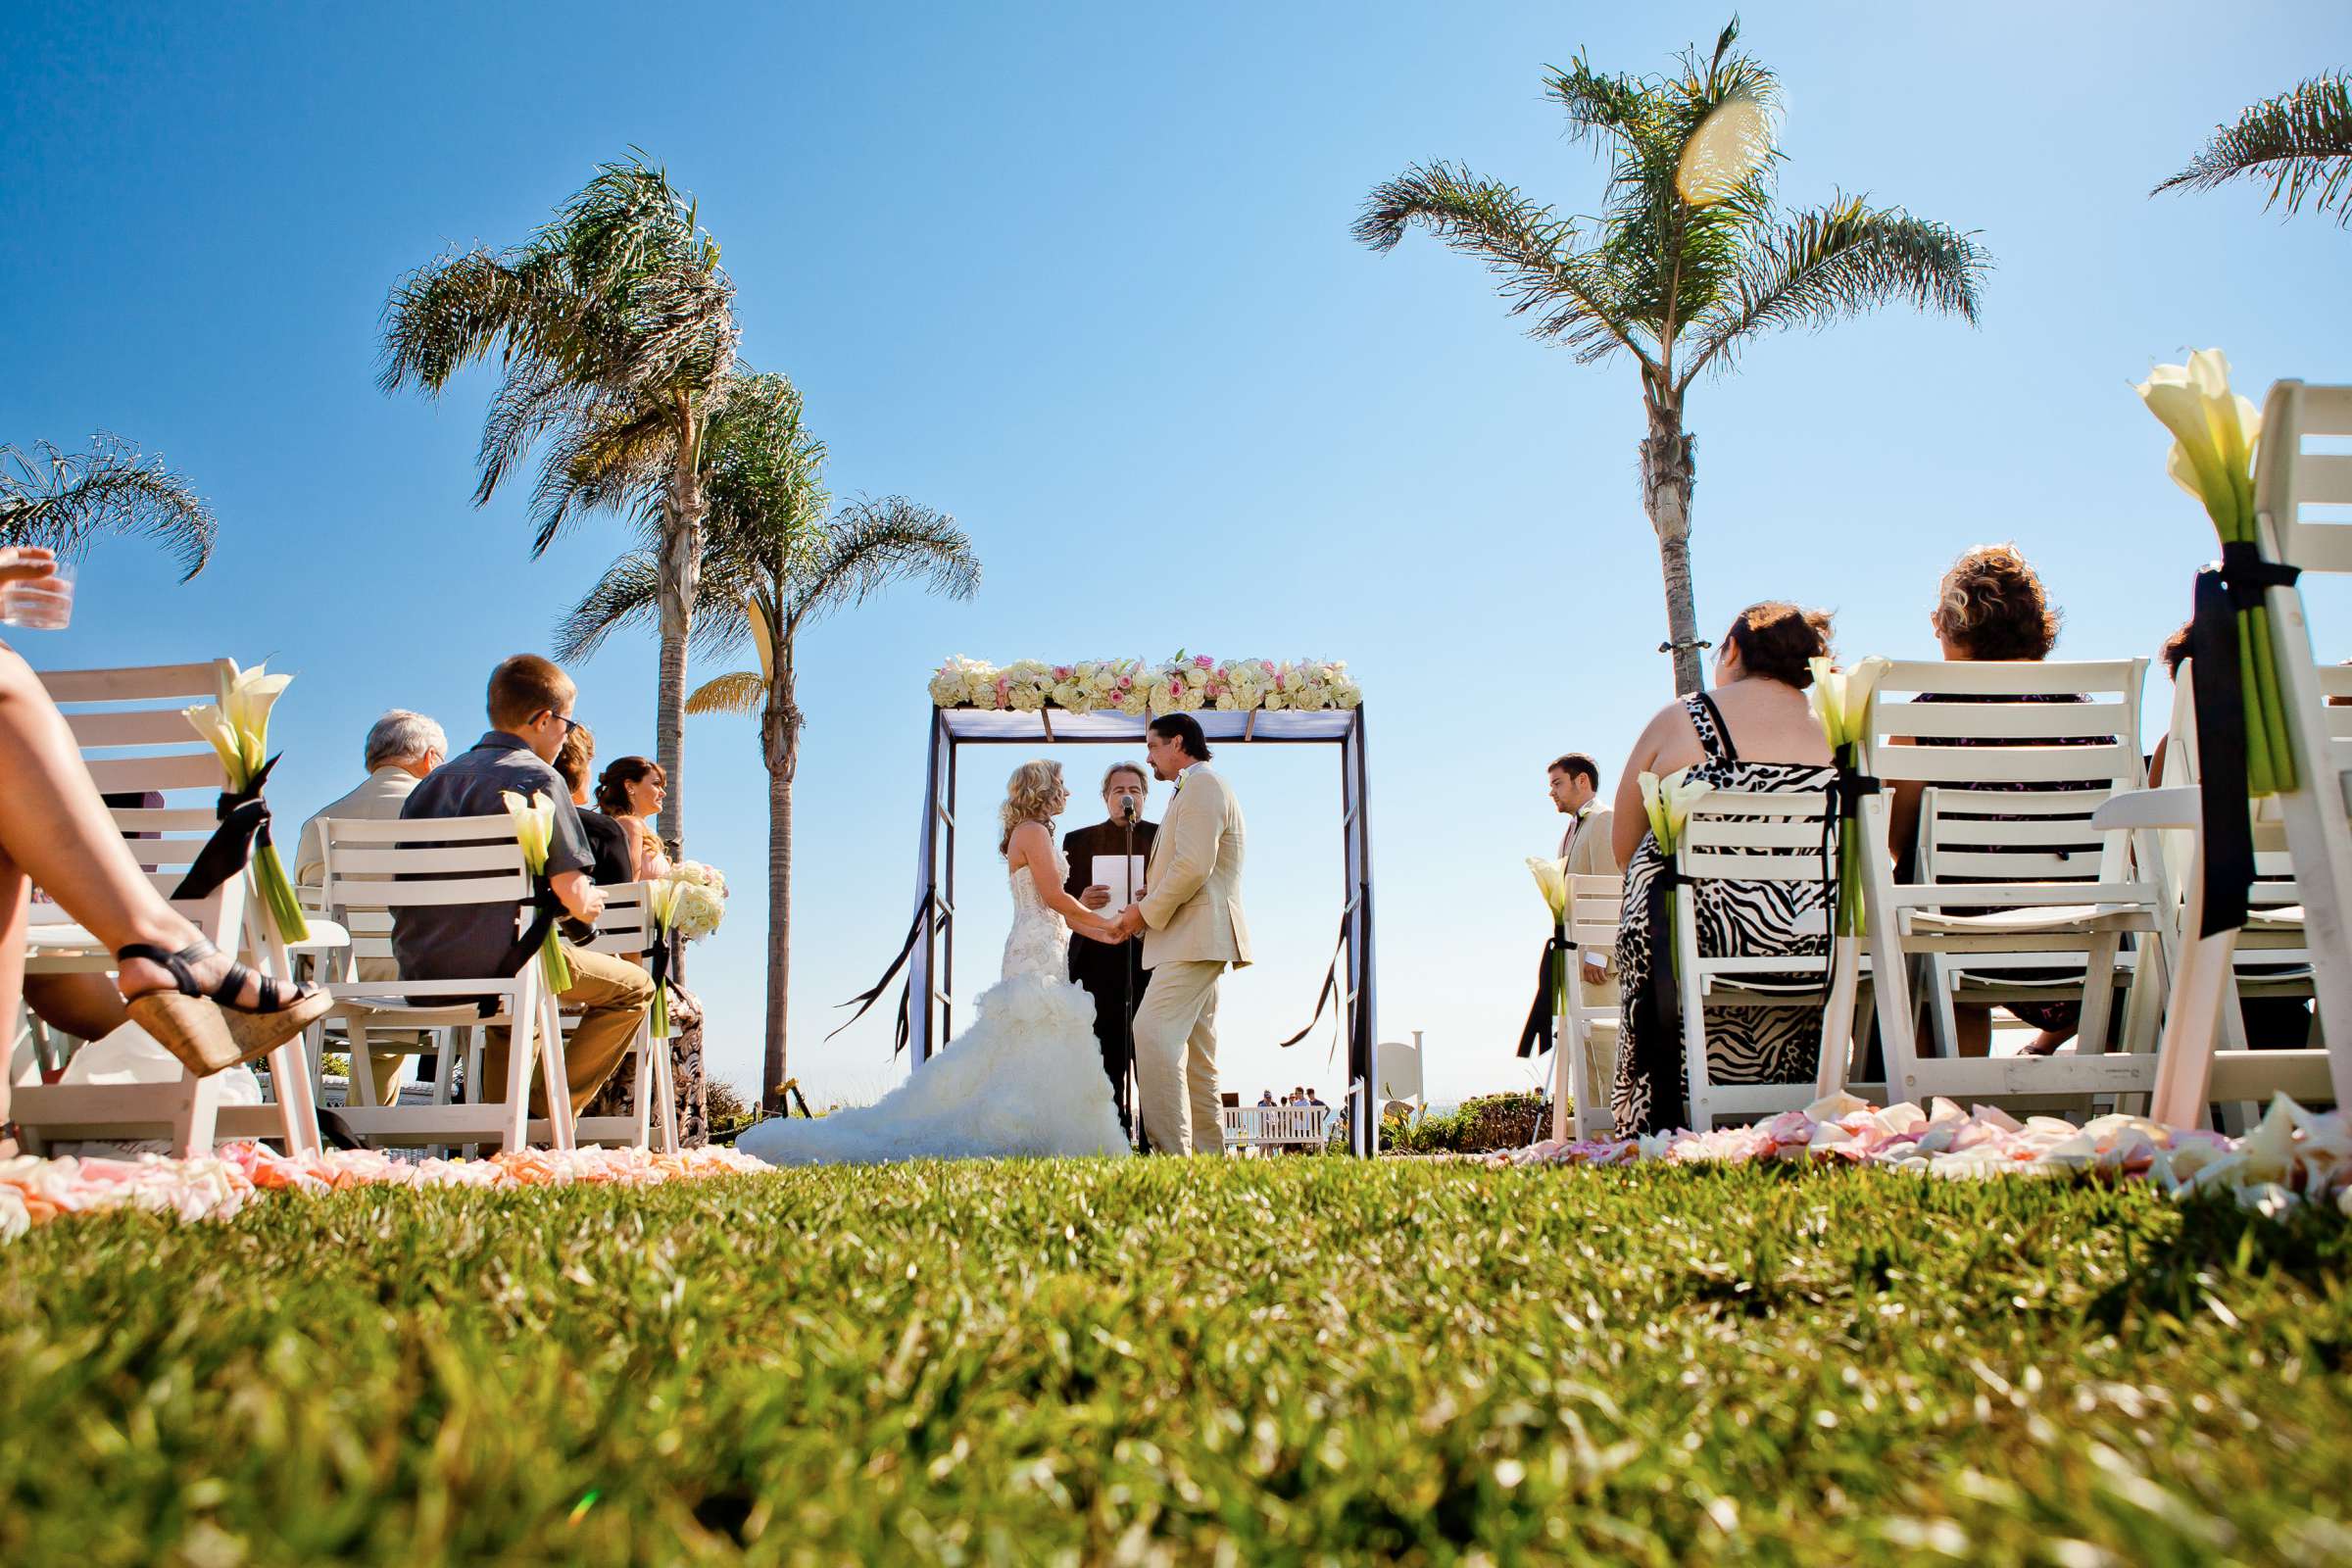 Hotel Del Coronado Wedding, Sarah and Tony Wedding Photo #323750 by True Photography